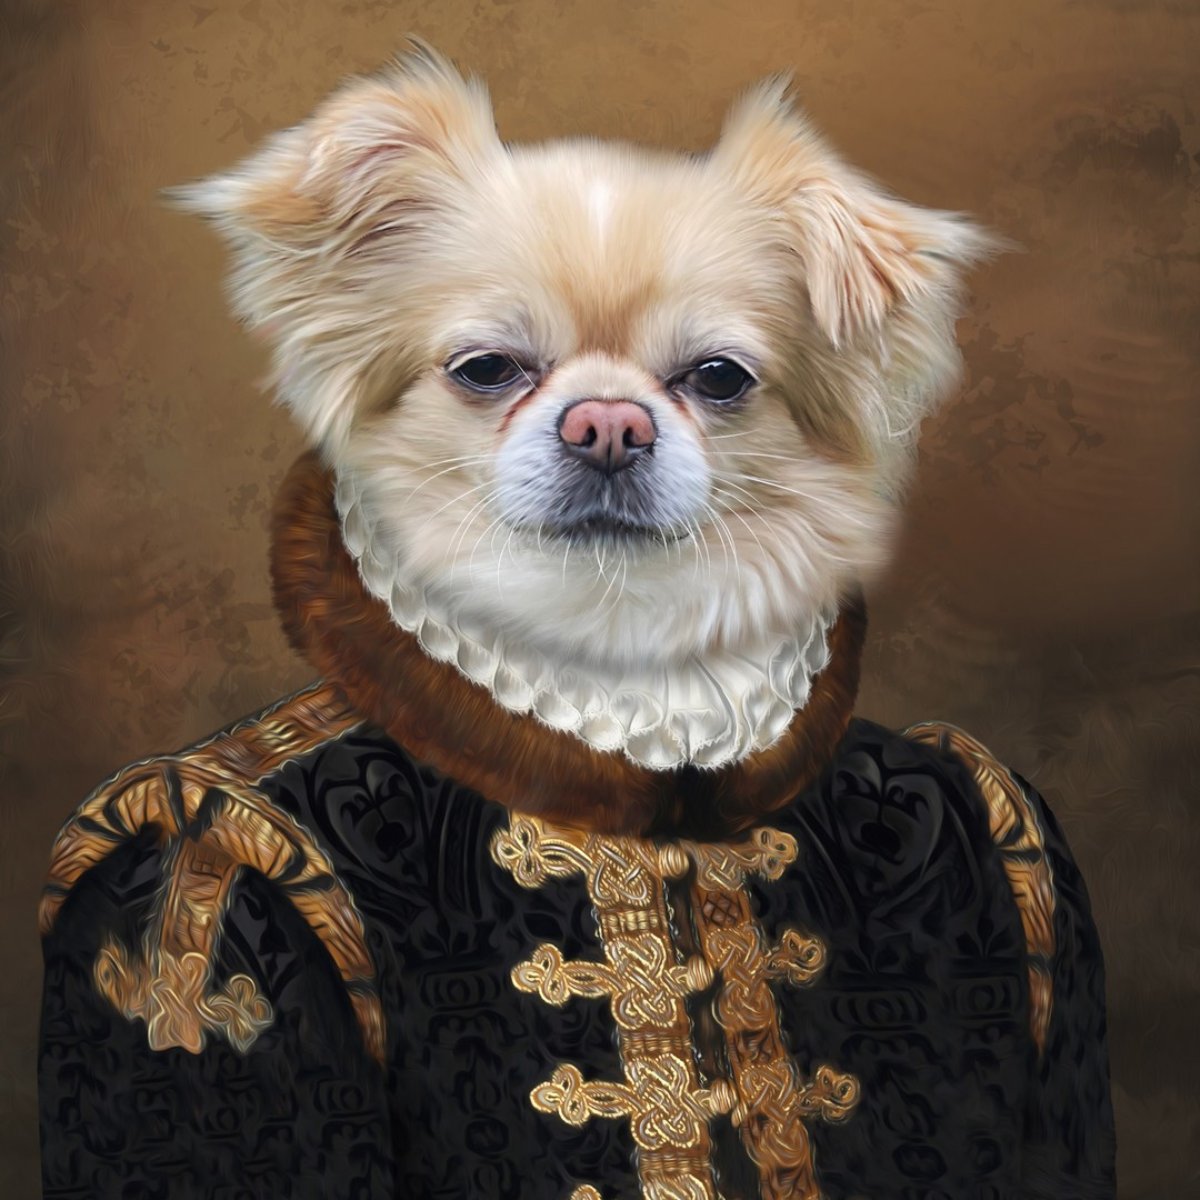 Renaissance Digital Pet Portraits